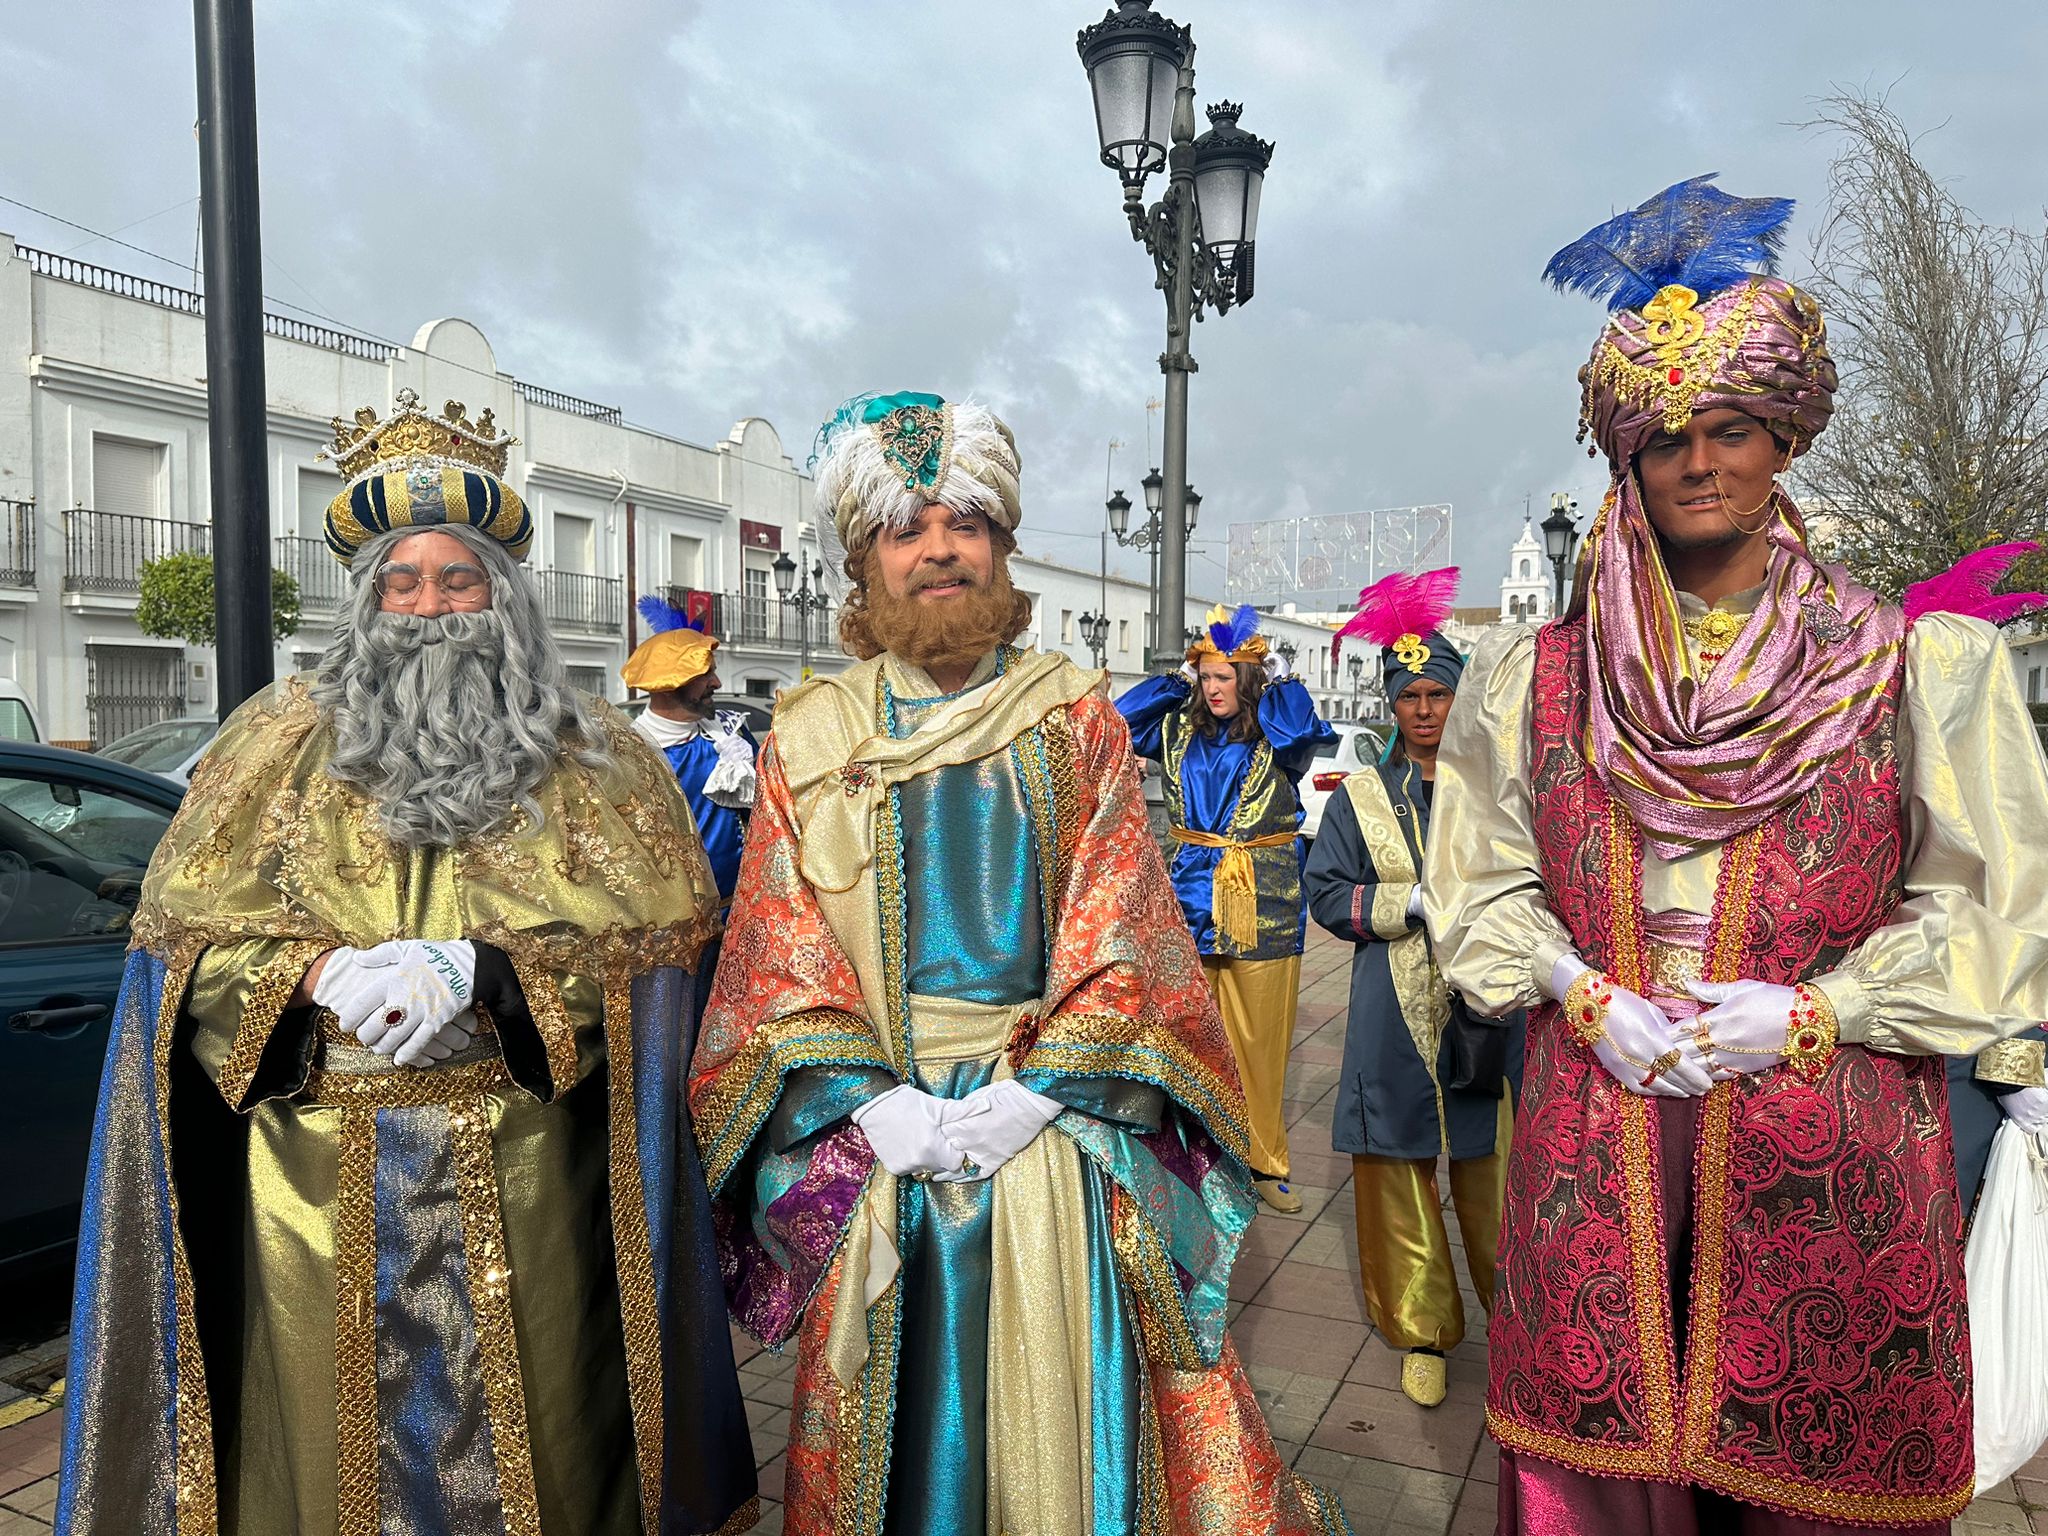 Los Reyes Magos visitan el Ayuntamiento de Isla Cristina